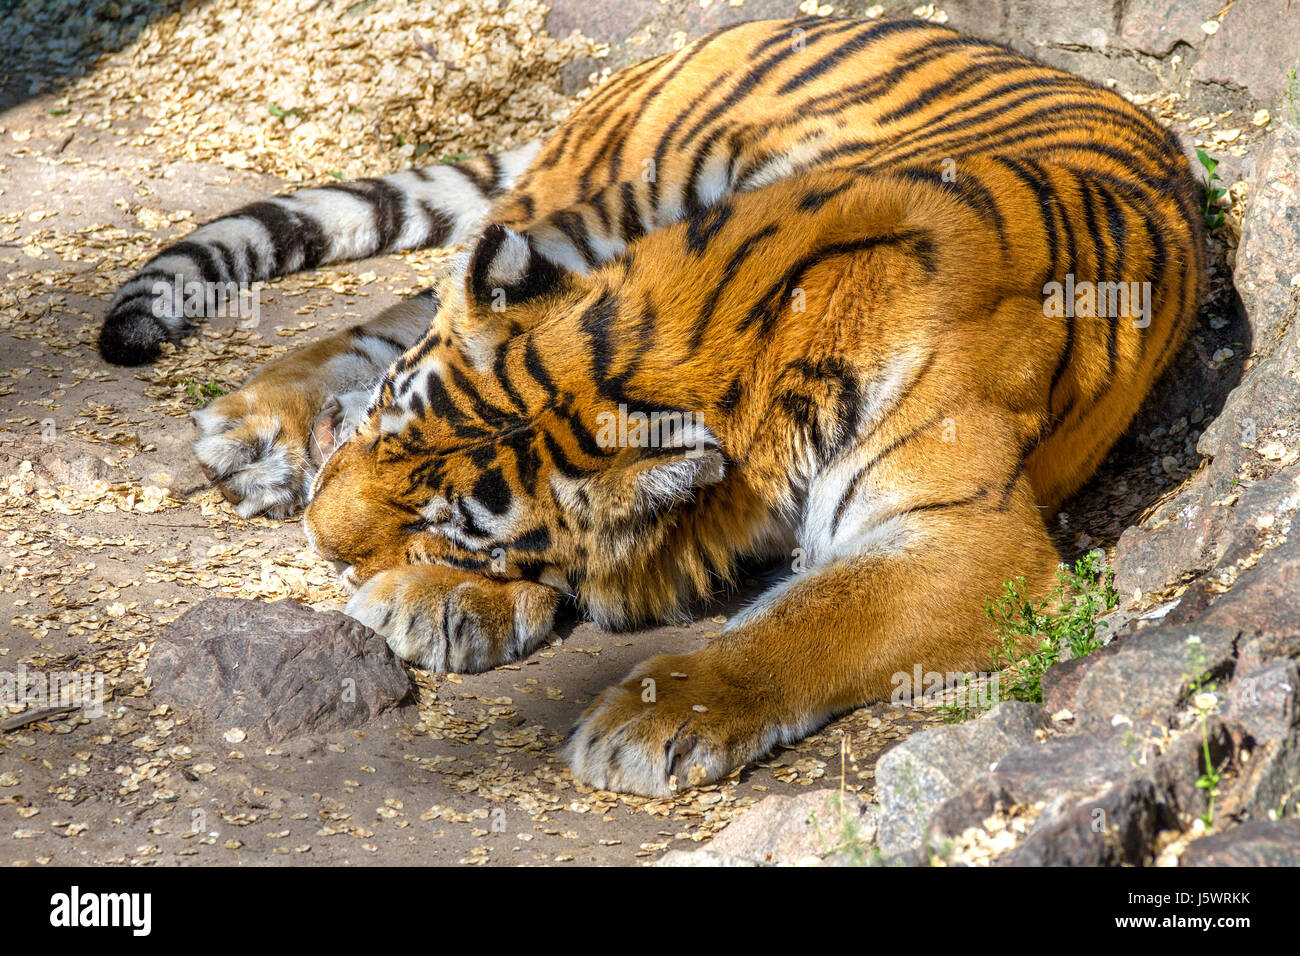 Immagine di animali selvatici striped predator tigre di Amur addormentato Foto Stock